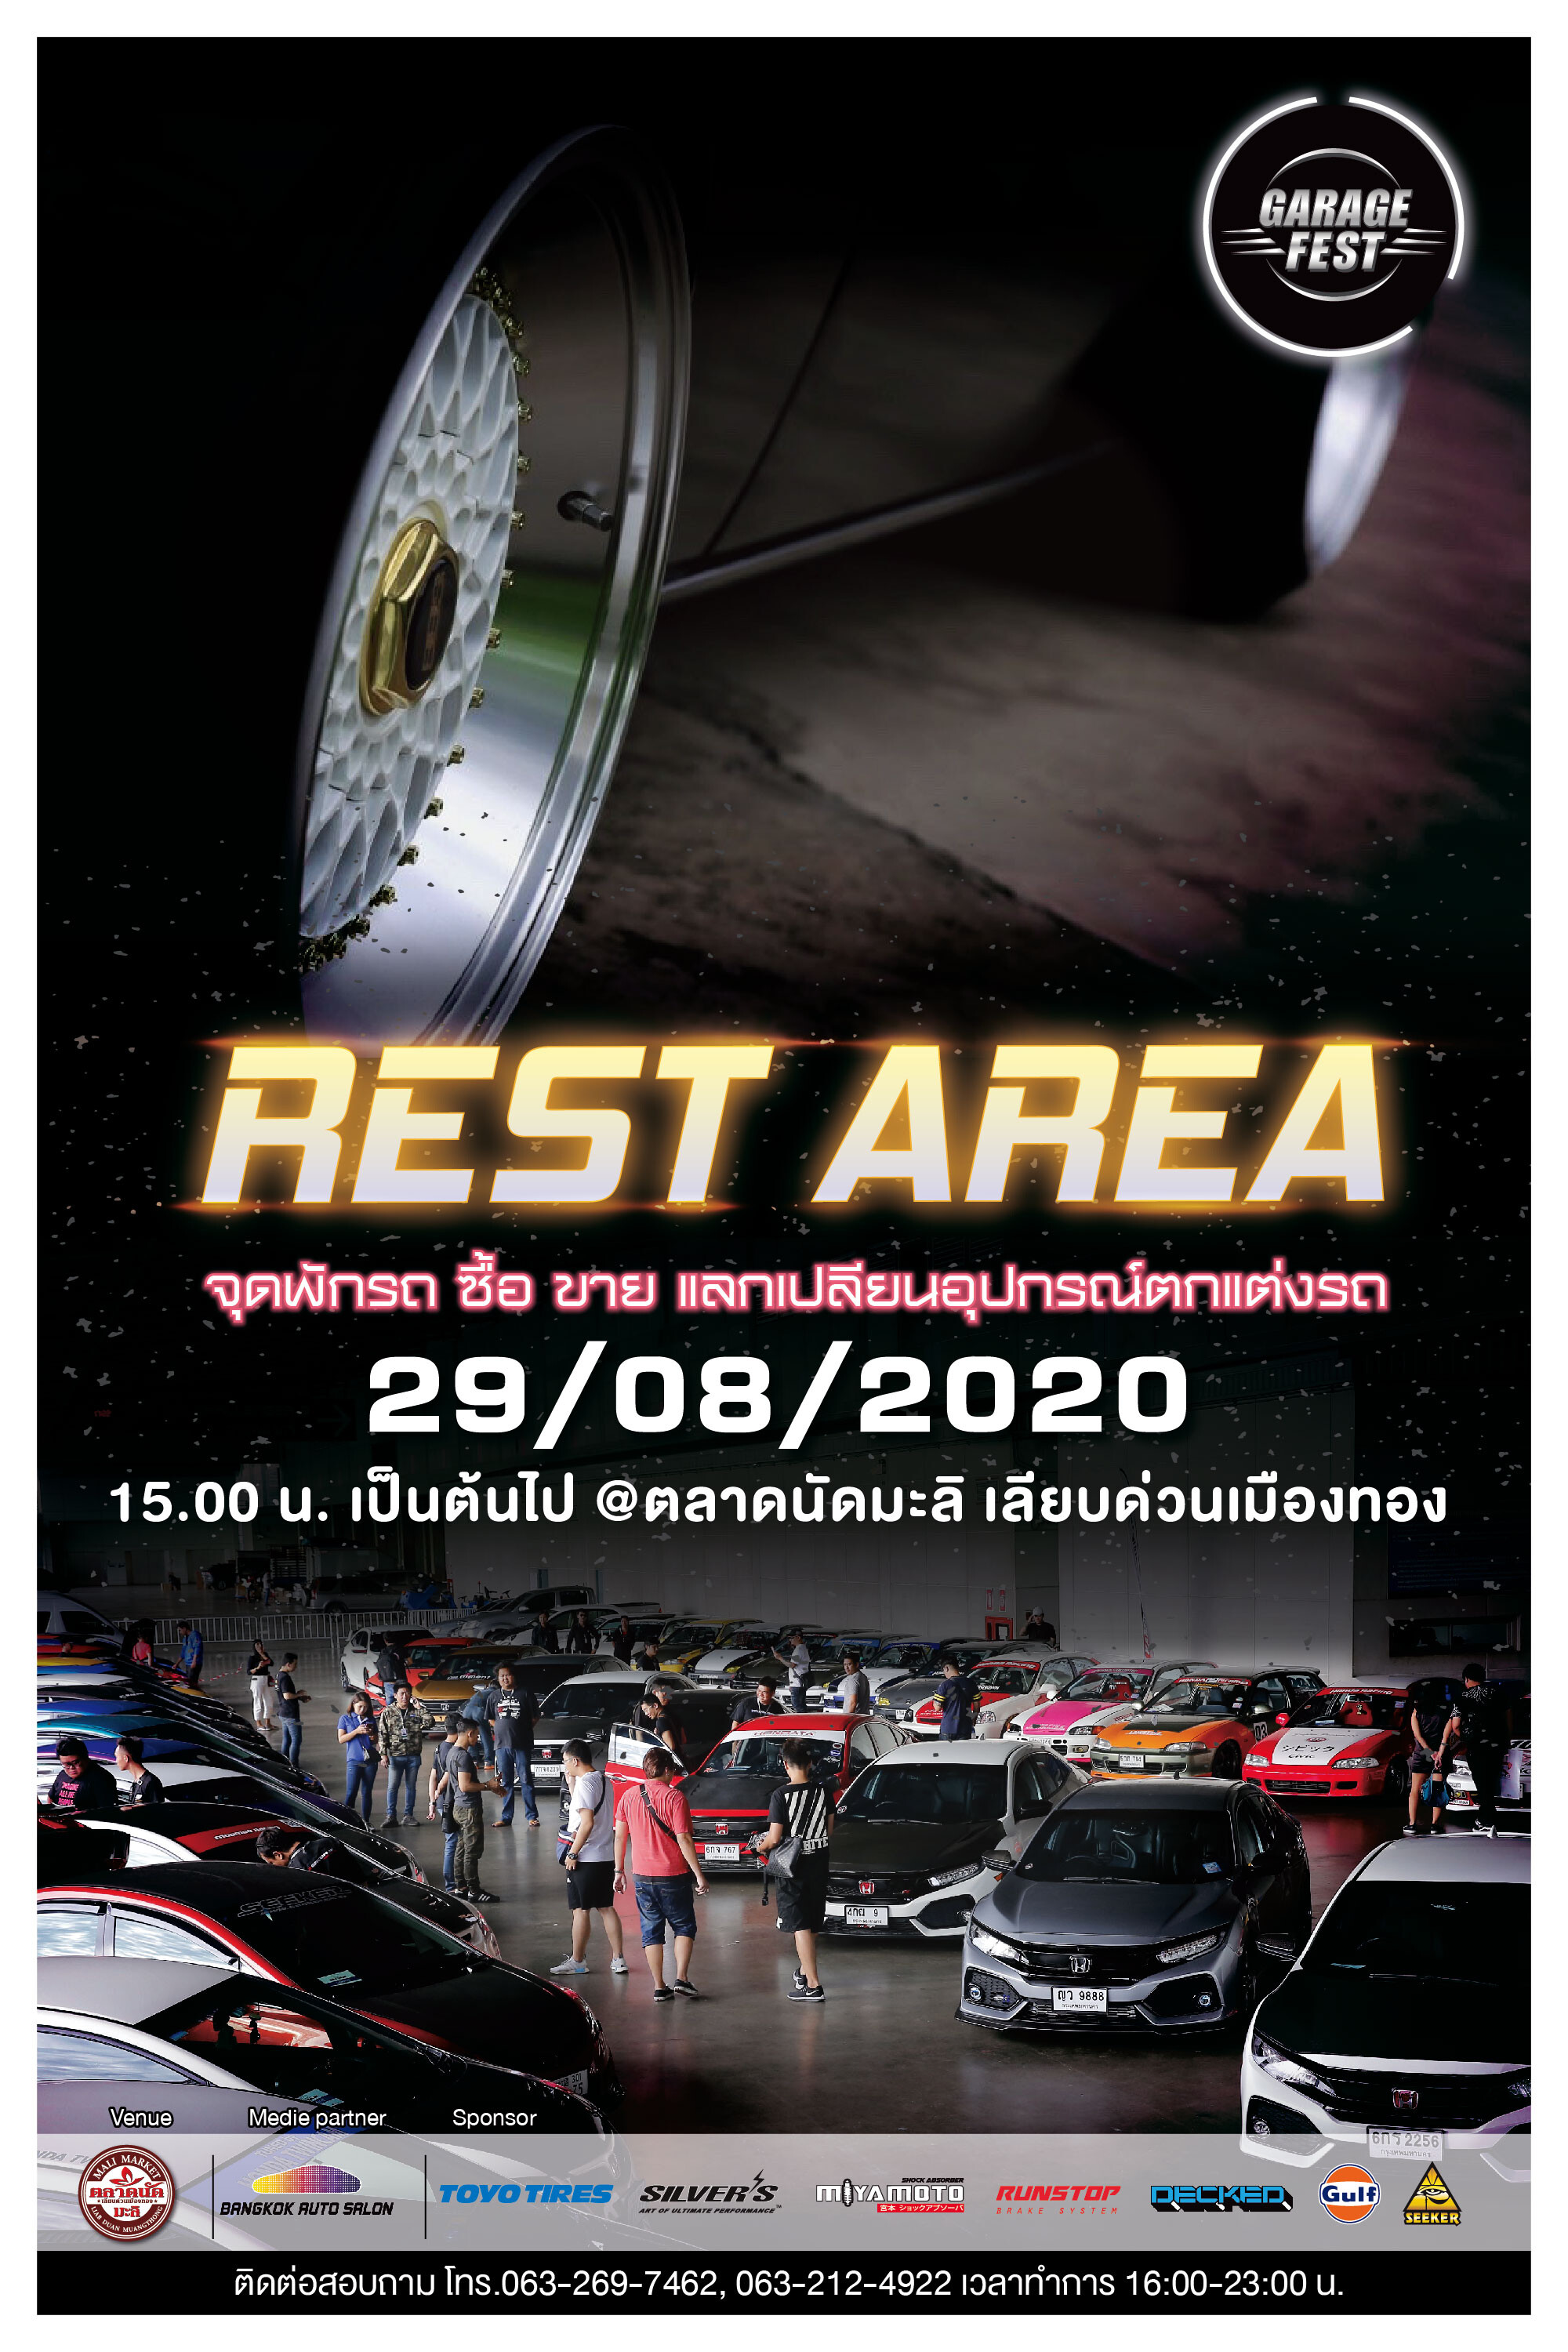 เตรียมพบกับงาน  'GARAGE FEST REST AREA’  จุดพักรถ ซื้อ ขาย แลกเปลี่ยนอุปกรณ์ตกแต่งรถ 29 ส.ค.นี้